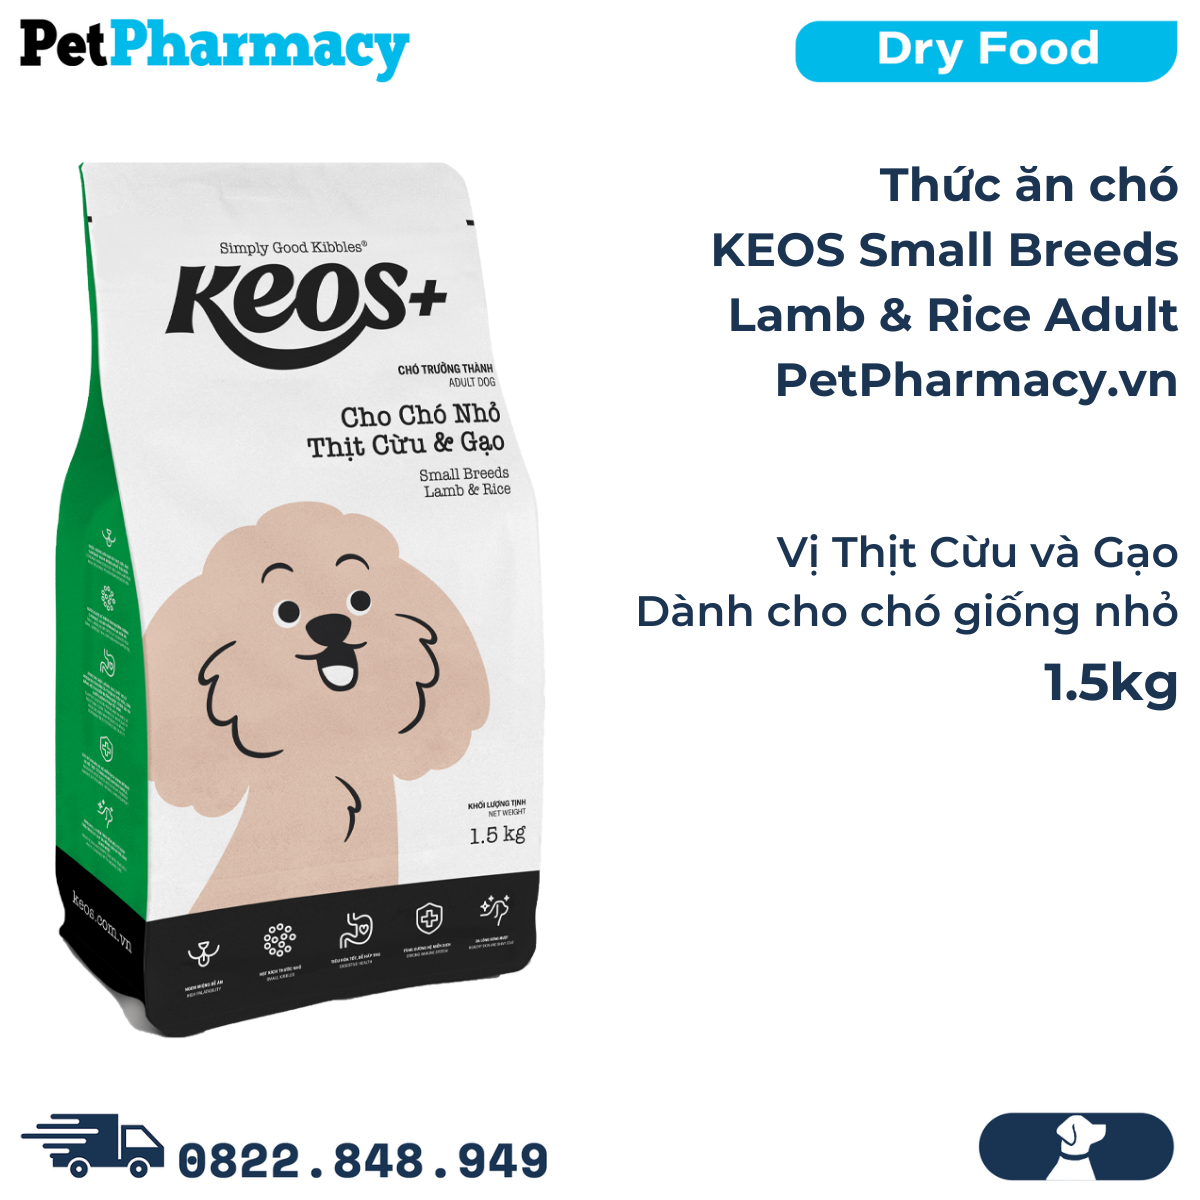  Thức ăn chó KEOS Small Breeds Lamb & Rice Adult 1.5kg - Vị Thịt Cừu và Gạo, dành cho chó giống nhỏ 